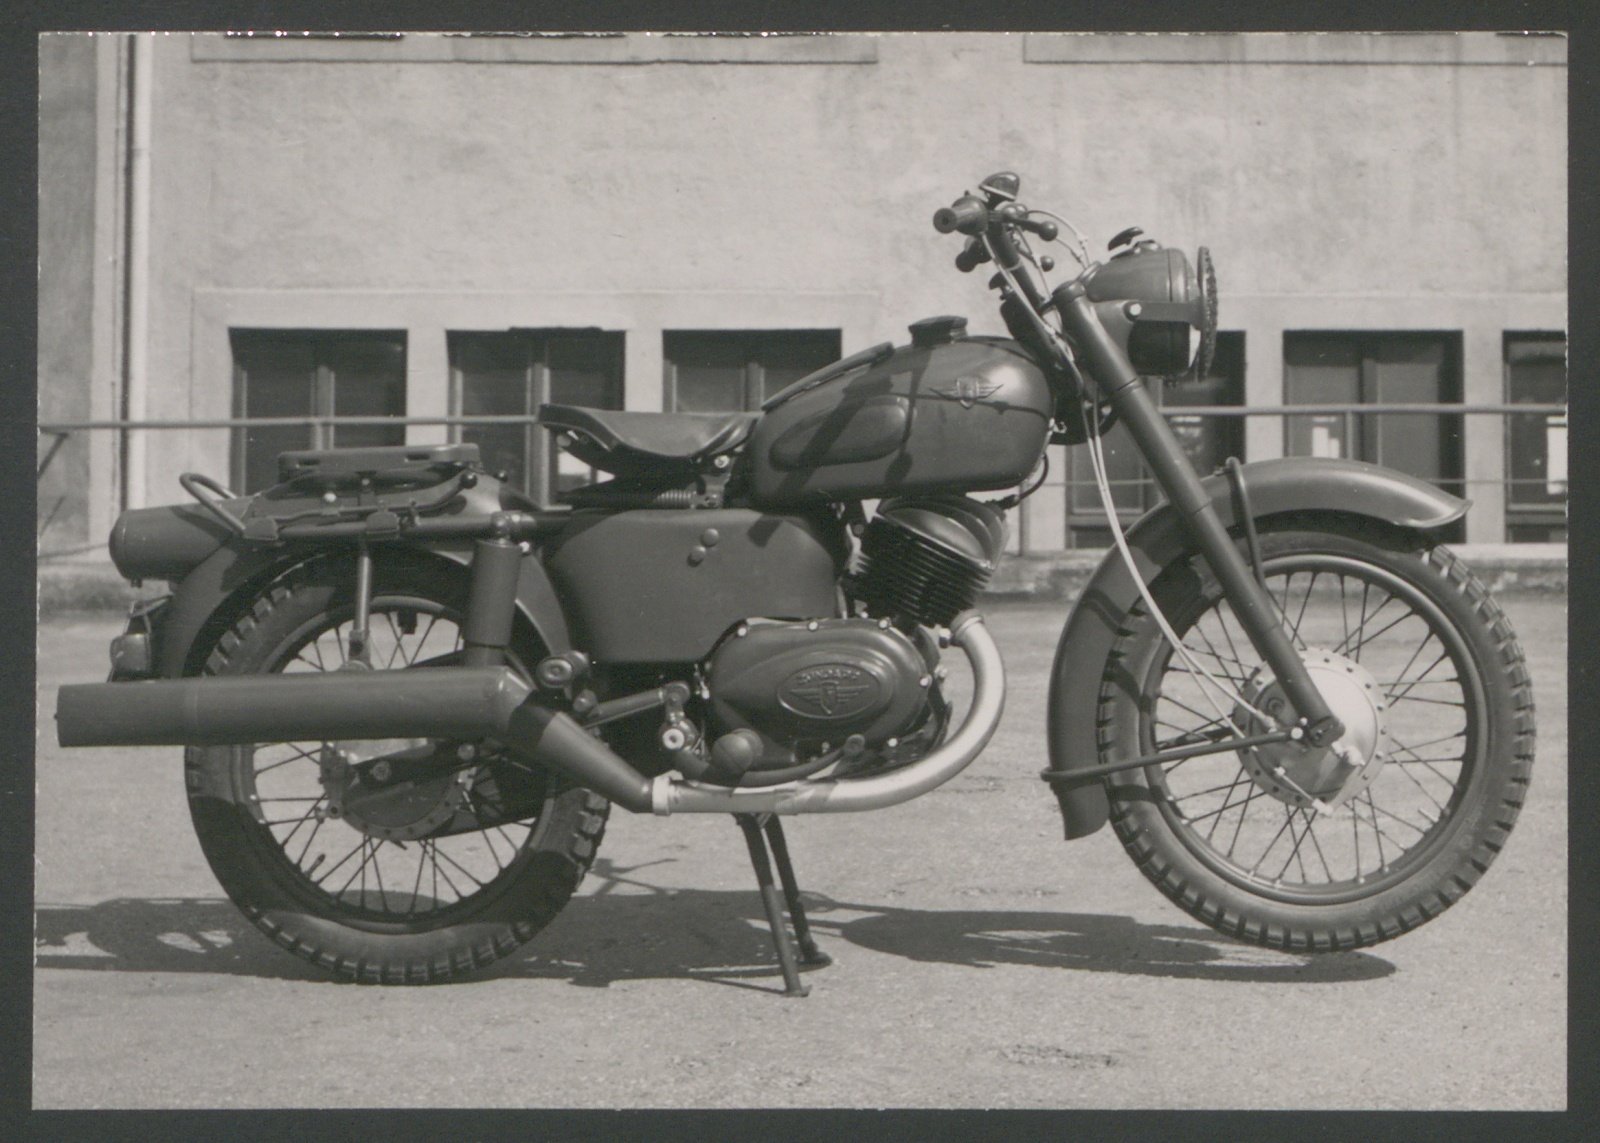 Fotografie: Motorrad, vermutlich genutzt durch Bundeswehr (Stiftung Deutsches Technikmuseum Berlin CC0)